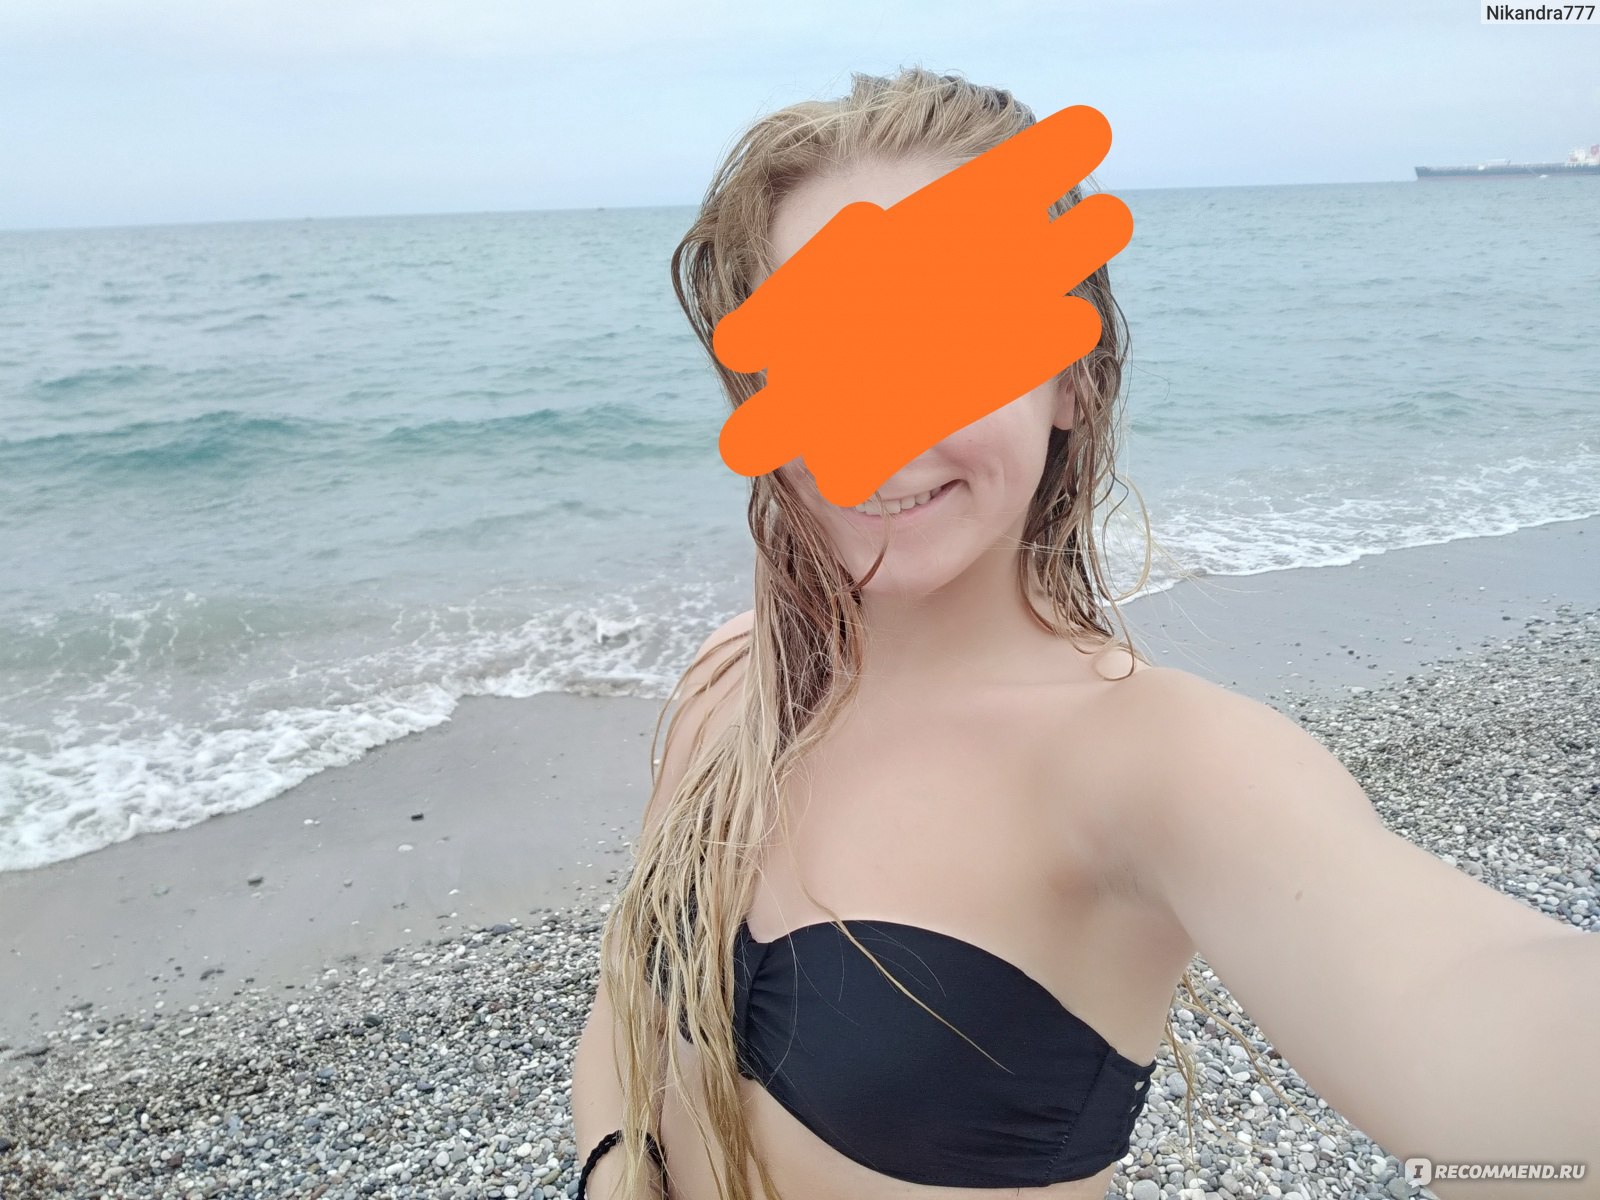 Турция запретила фотографировать девушек на пляже